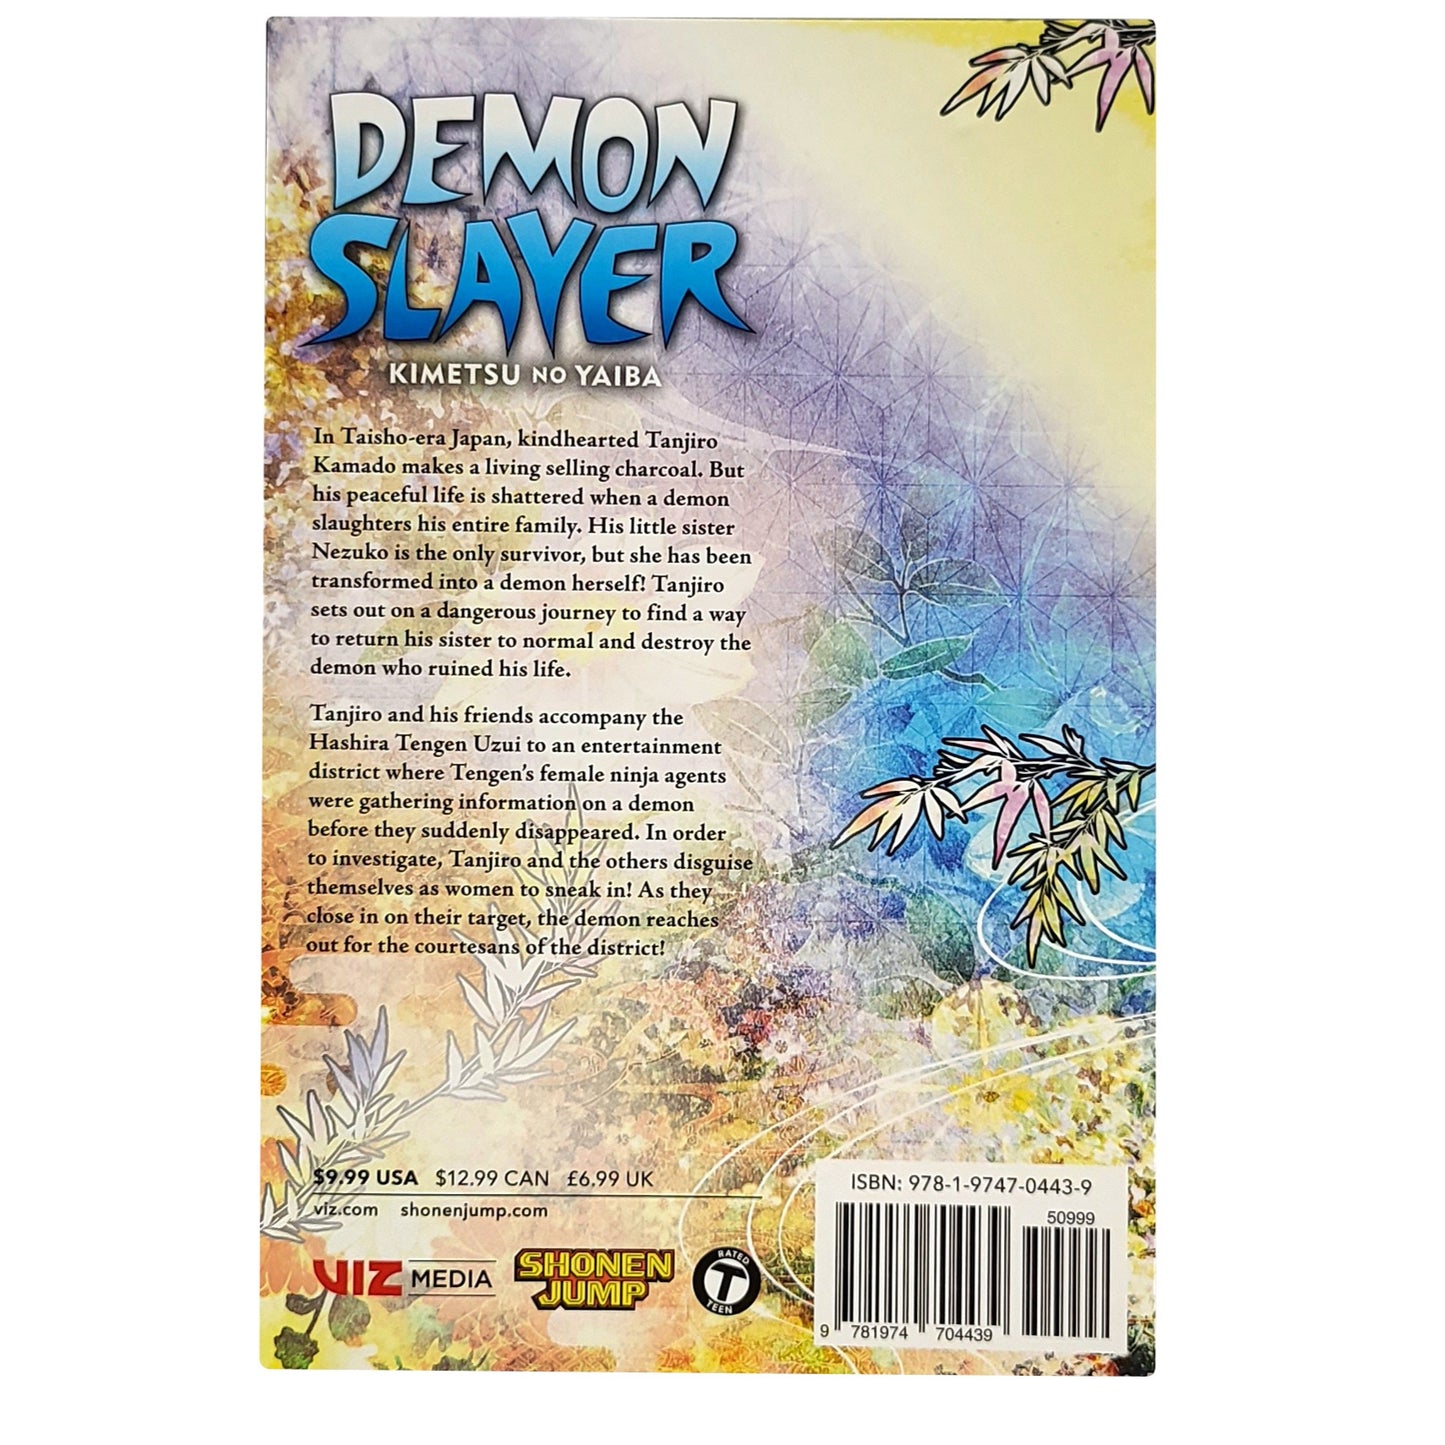 Demon Slayer: Kimetsu no Yaiba Vol. 9